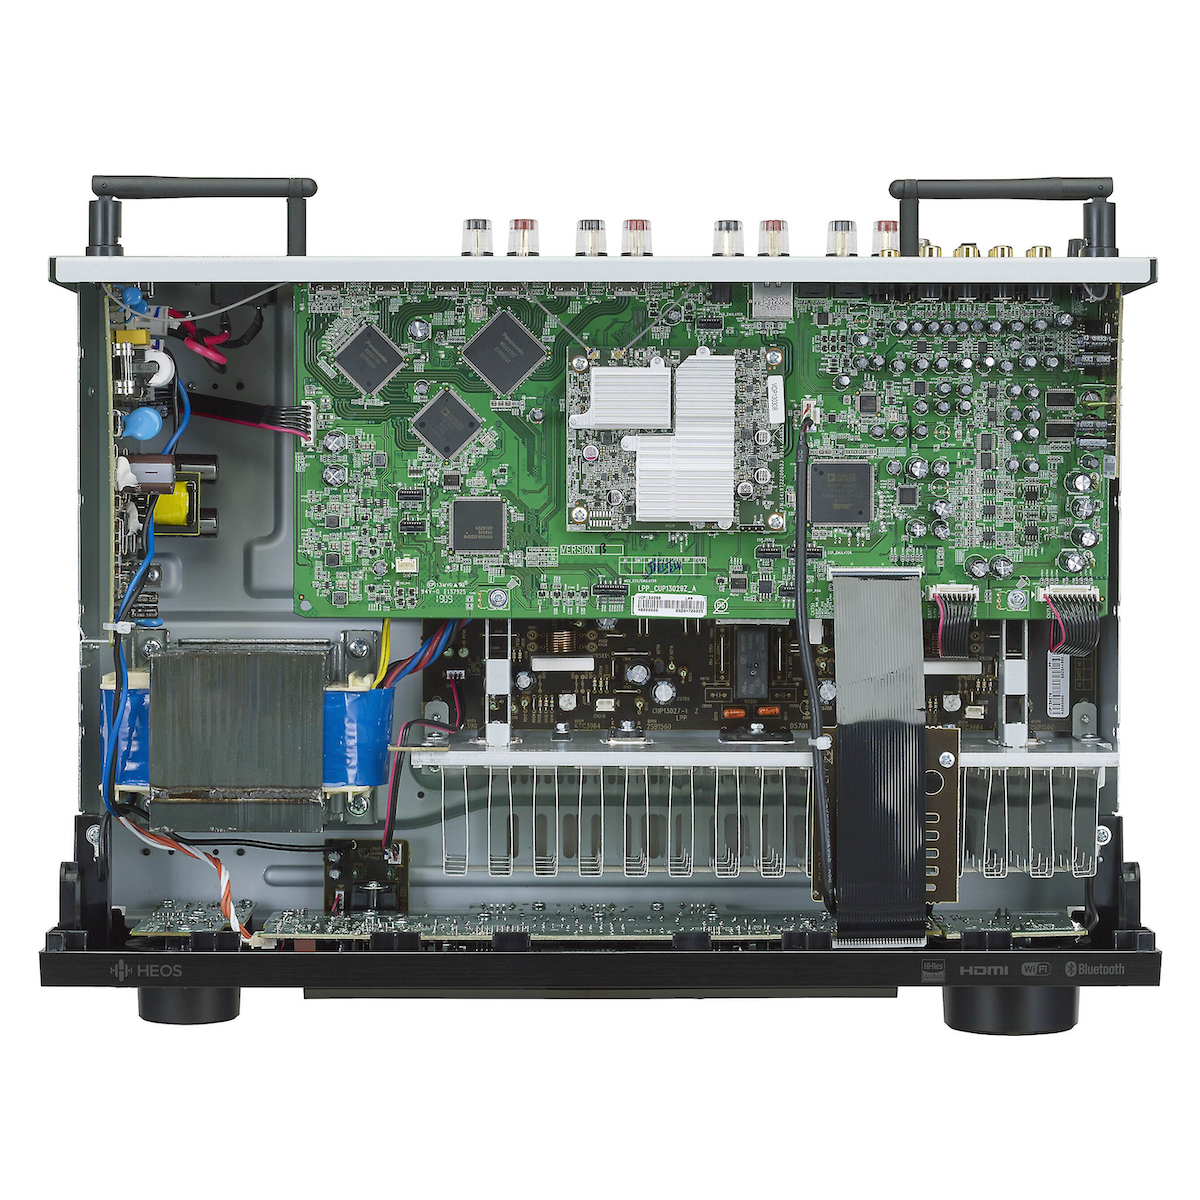 Denon DRA-800H - Stereo Network Receiver, Denon, Stereo Receiver - AVStore.in